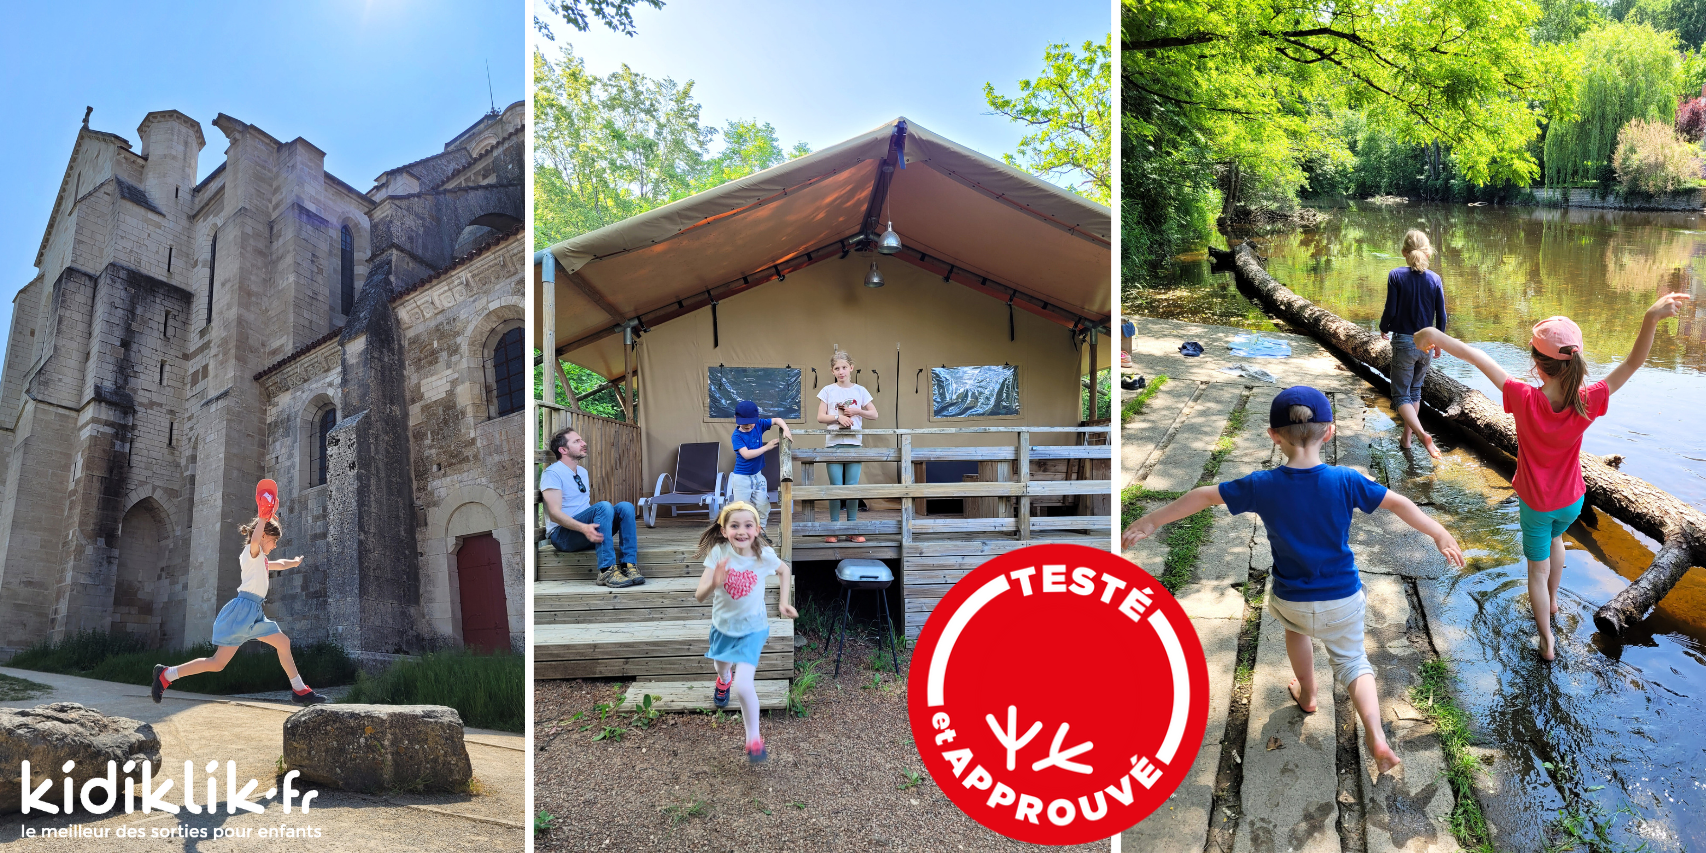 Lieux insolites en Bourgogne: 5 bonnes idées pour un super week-end en famille dans l'Yonne! On a testé!